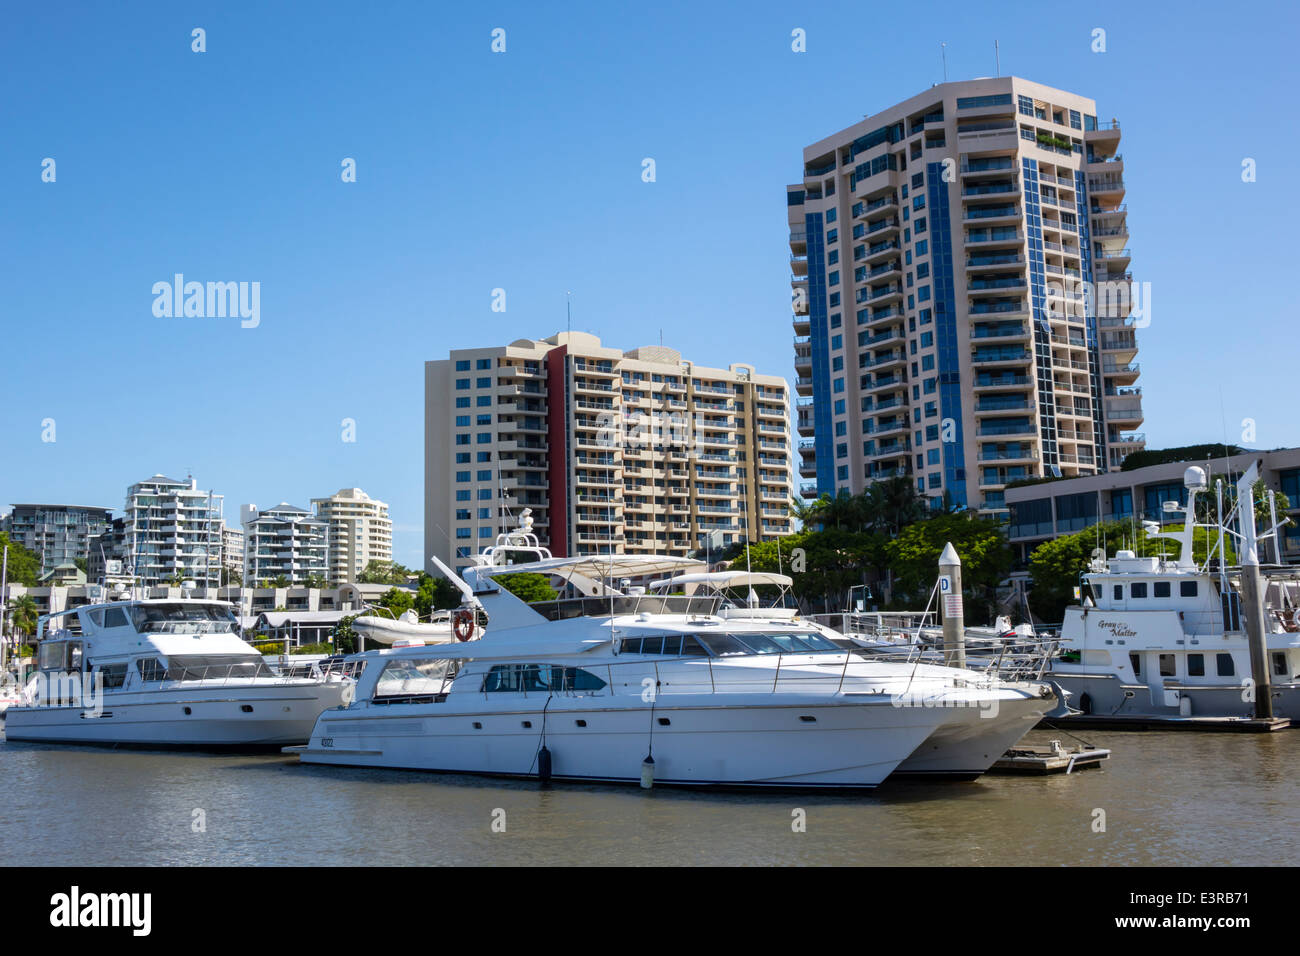 Brisbane Australien, Kangaroo Point, Brisbane River, Dockside, Marina, Eigentumswohnungen Wohnapartments Gebäude Gebäude Gehäuse, Boote, Yachten, Stockfoto